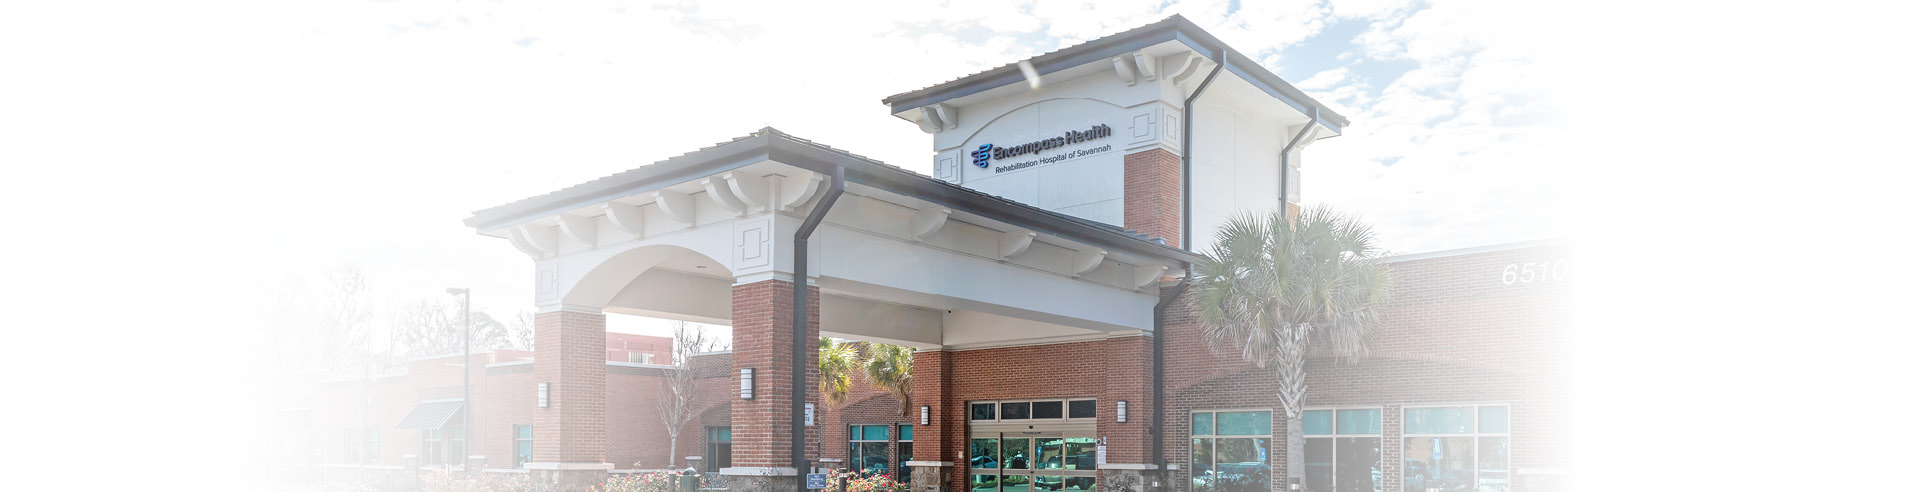 Encompass Health Rehabilitation Hospital of Savannah exterior